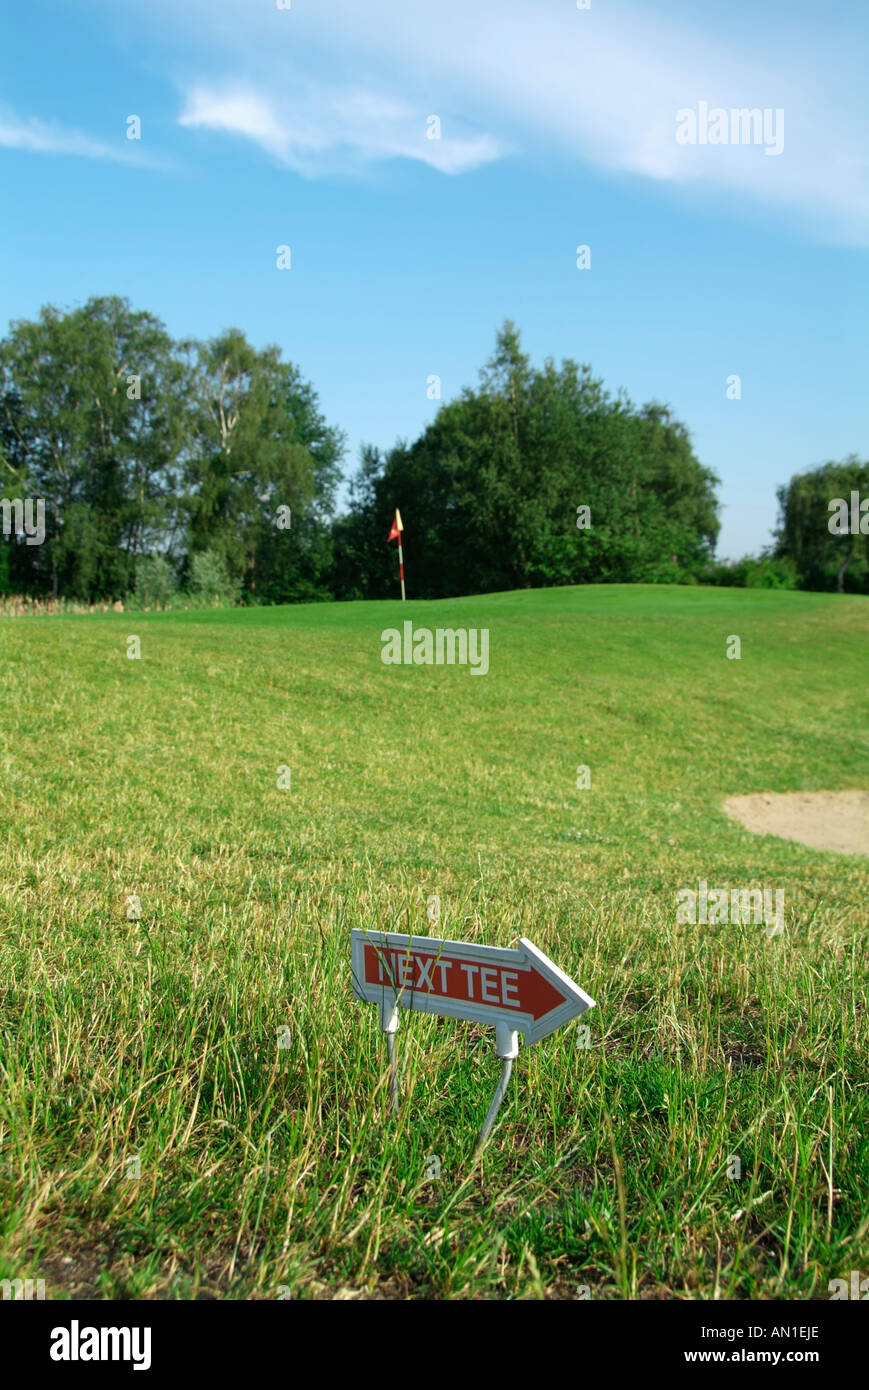 Golf Golf Golf, détail d'inscription on golf course Banque D'Images